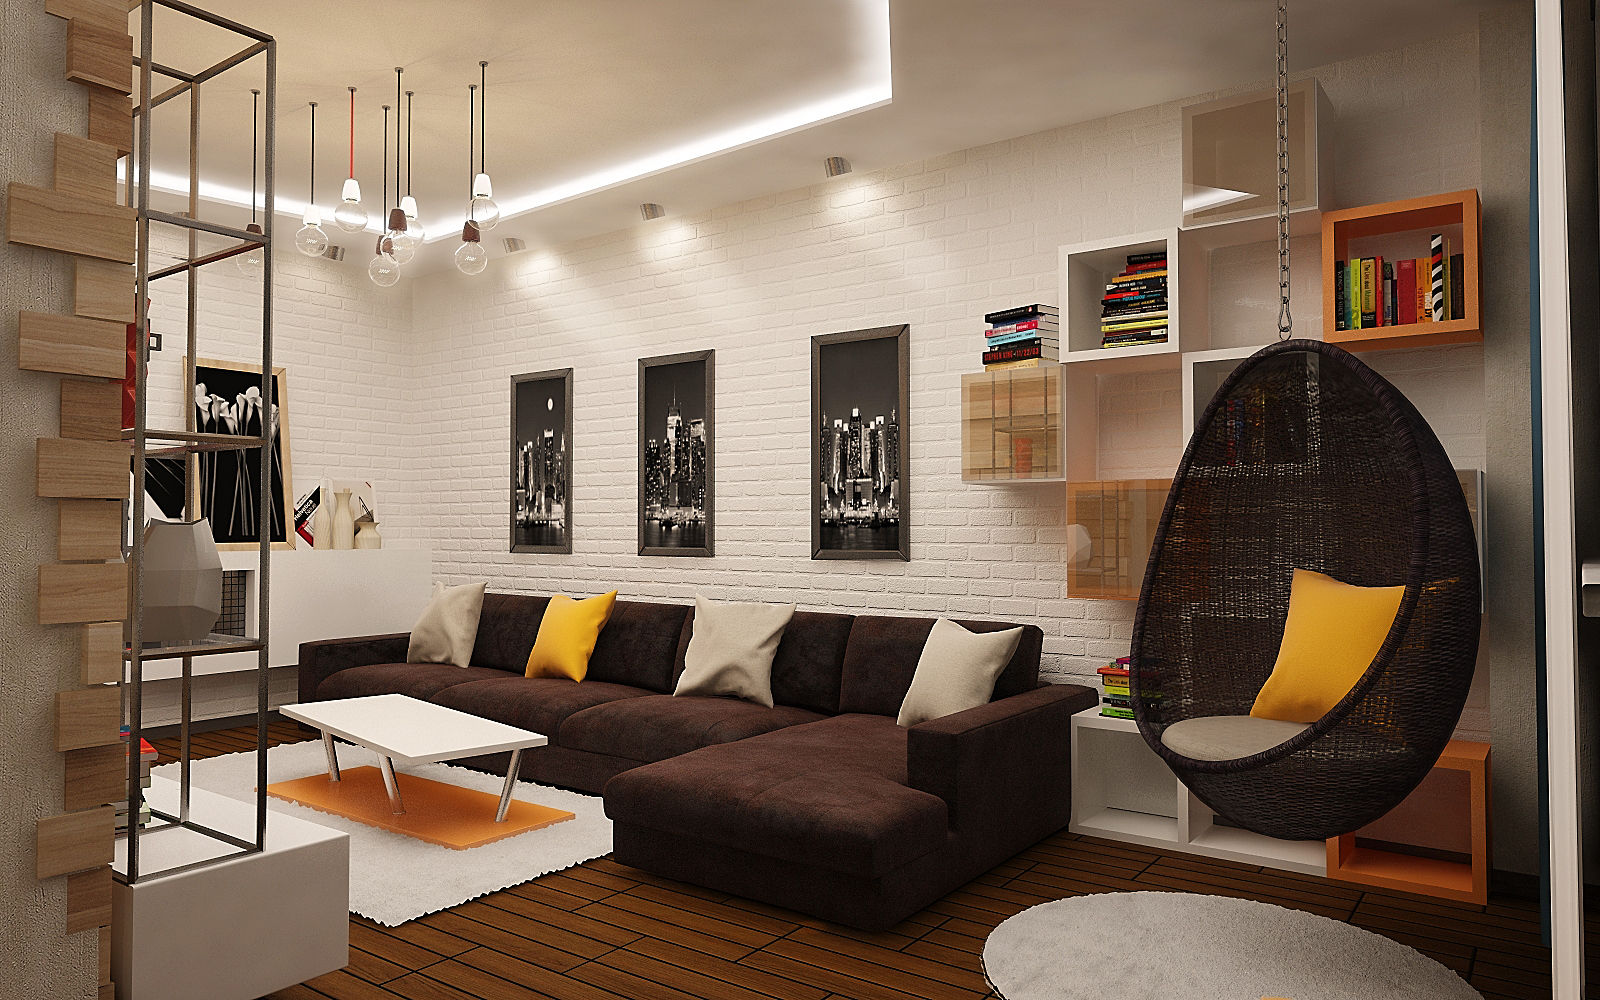 Интерьер 3х комнатной квартиры в стиле лофт , studio forma studio forma Industrial style living room